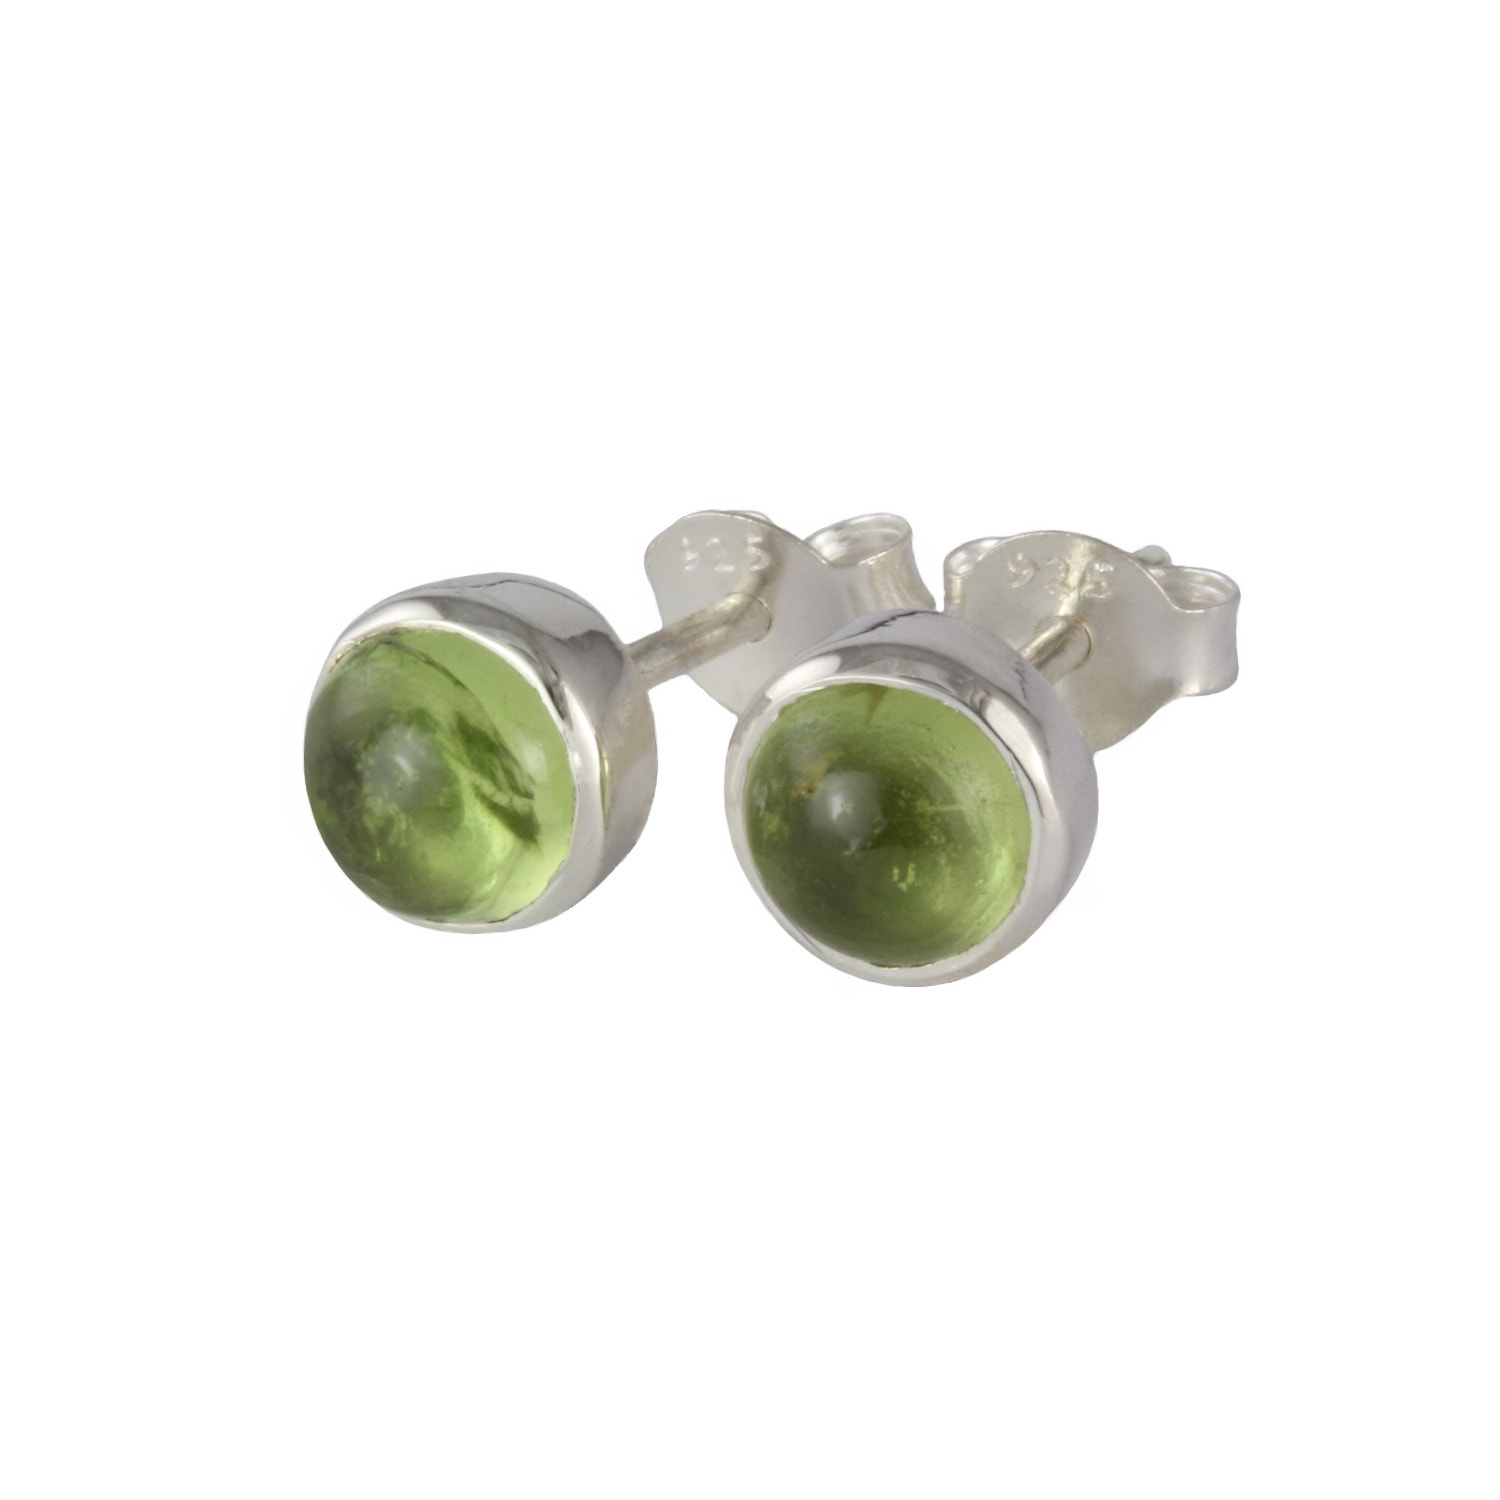 Women’s Silver / Green August Birthstone Earrings Studs - Peridot In Sterling Silver The Jewellery Store London